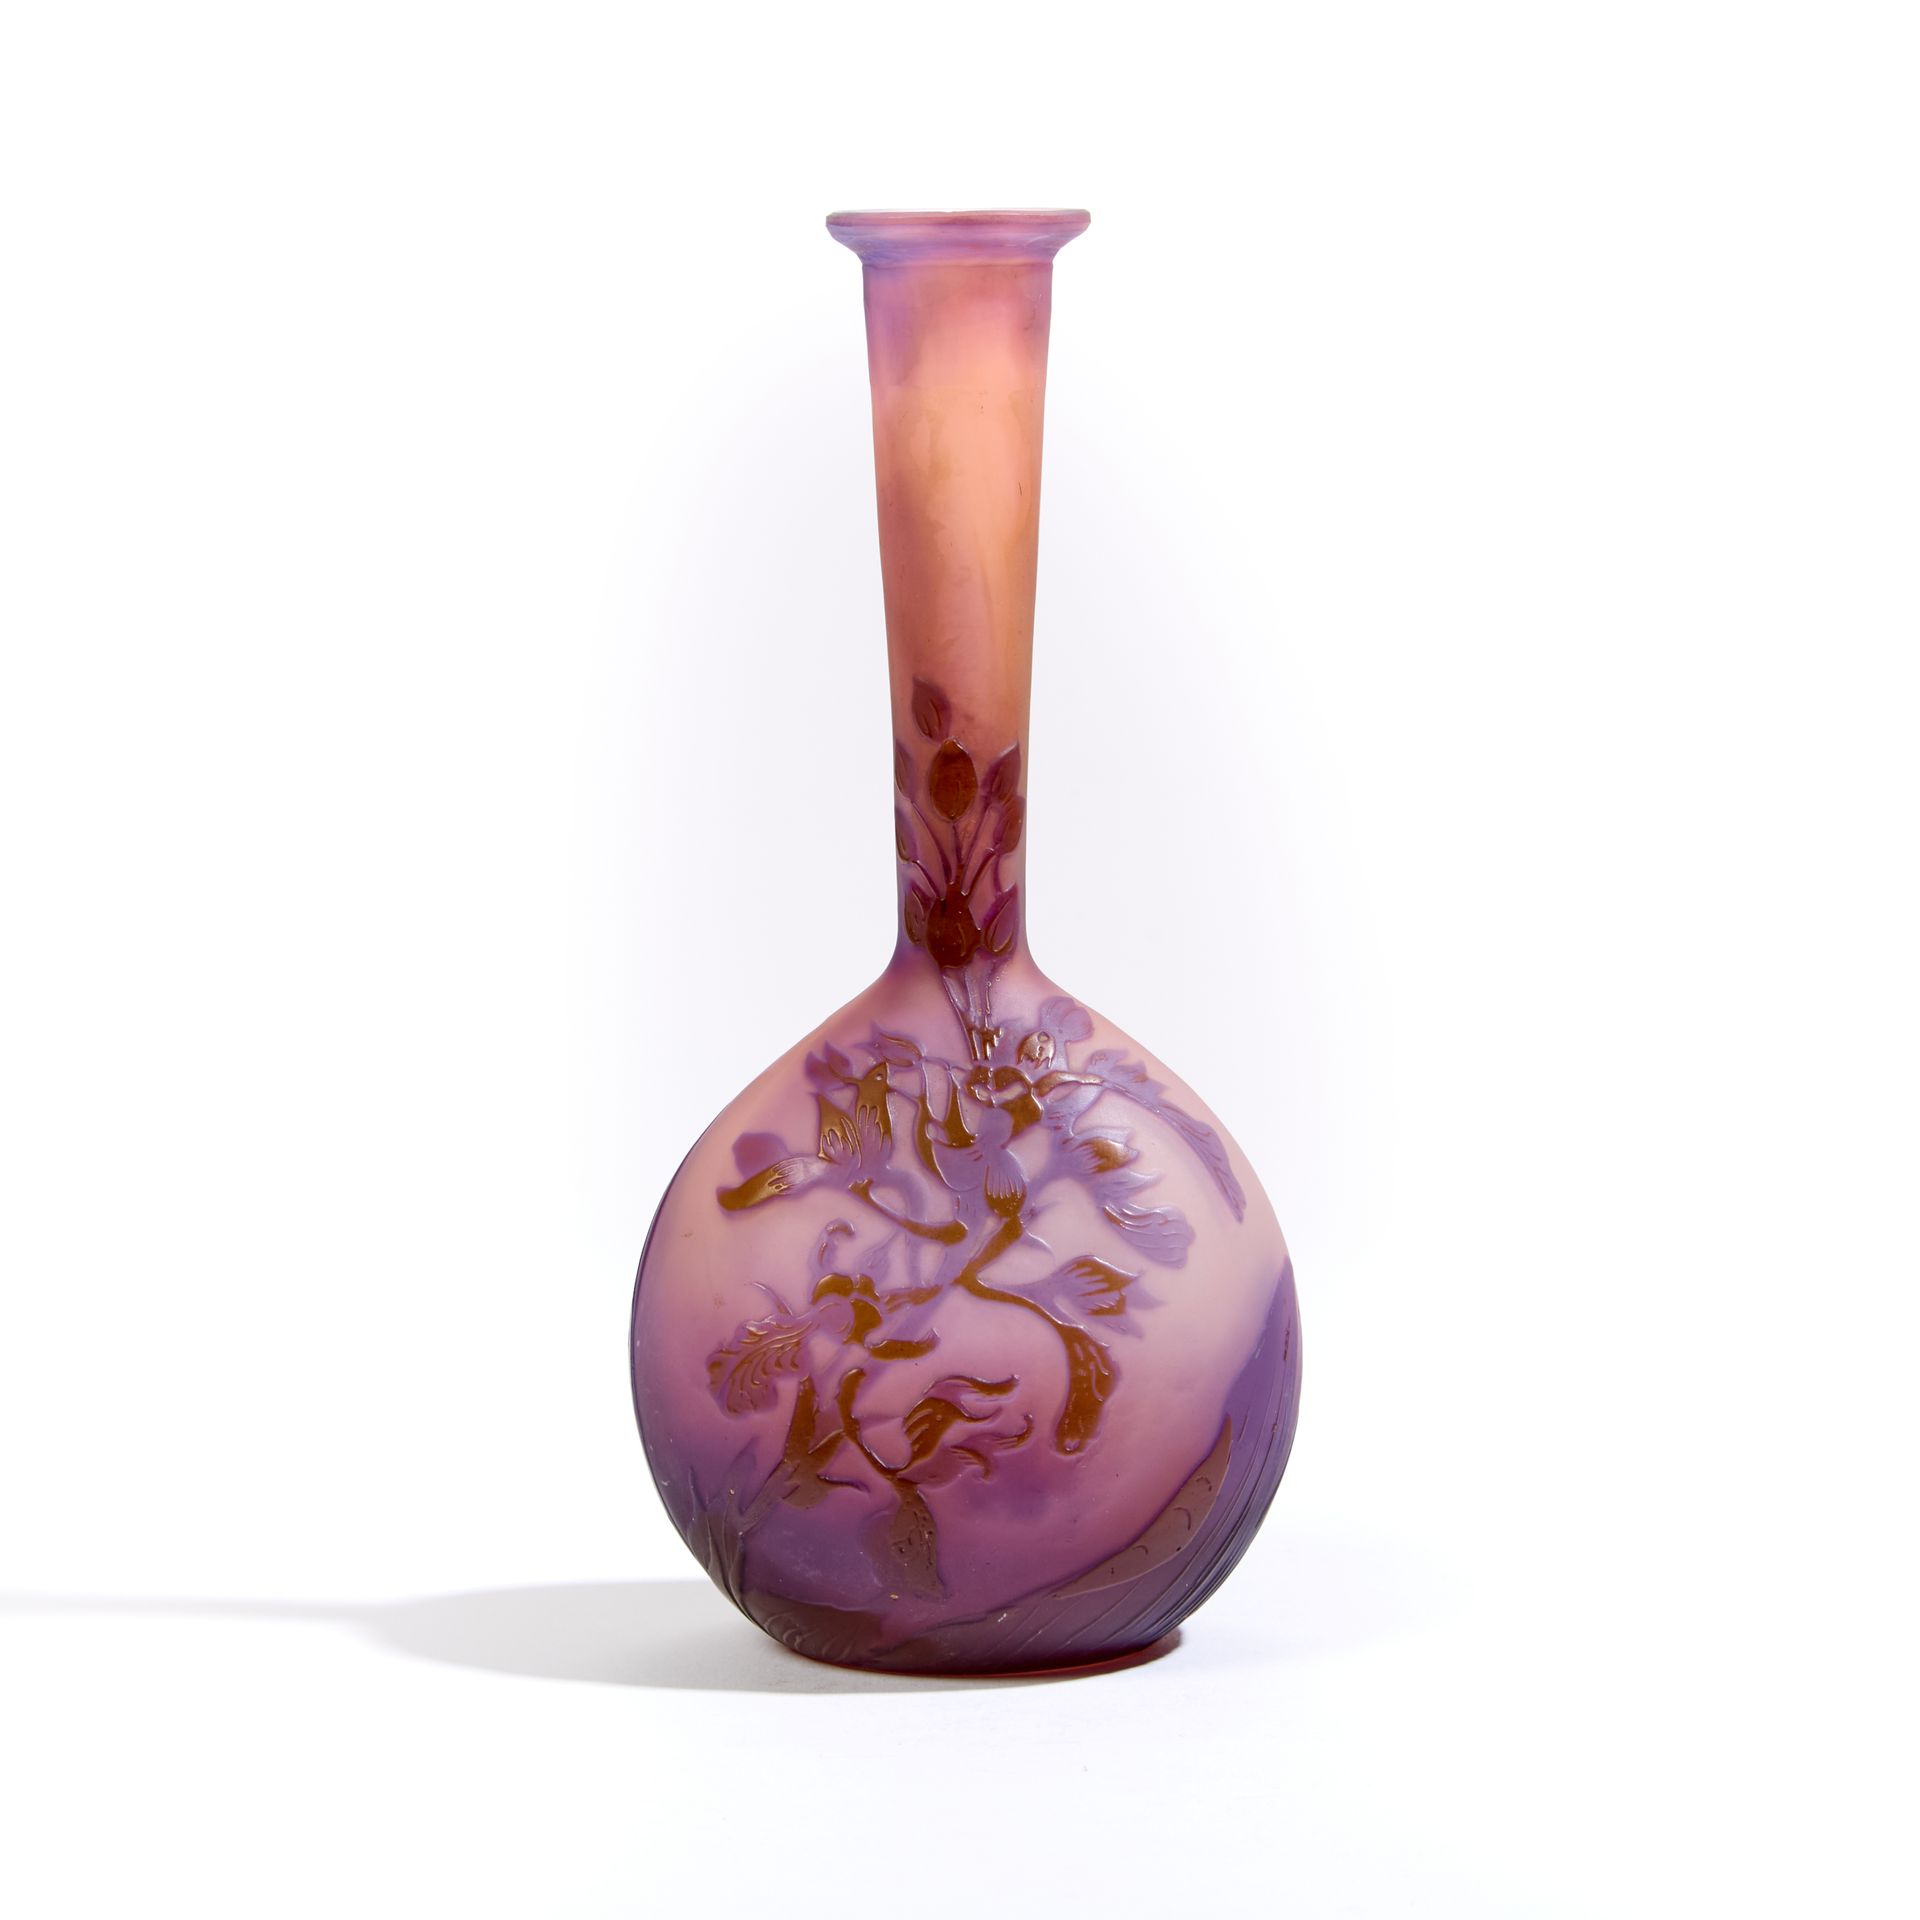 Null 机构 GALLE.

多层玻璃小花瓶，酸蚀淡紫色花朵装饰。

有签名。

高度高度：17 厘米